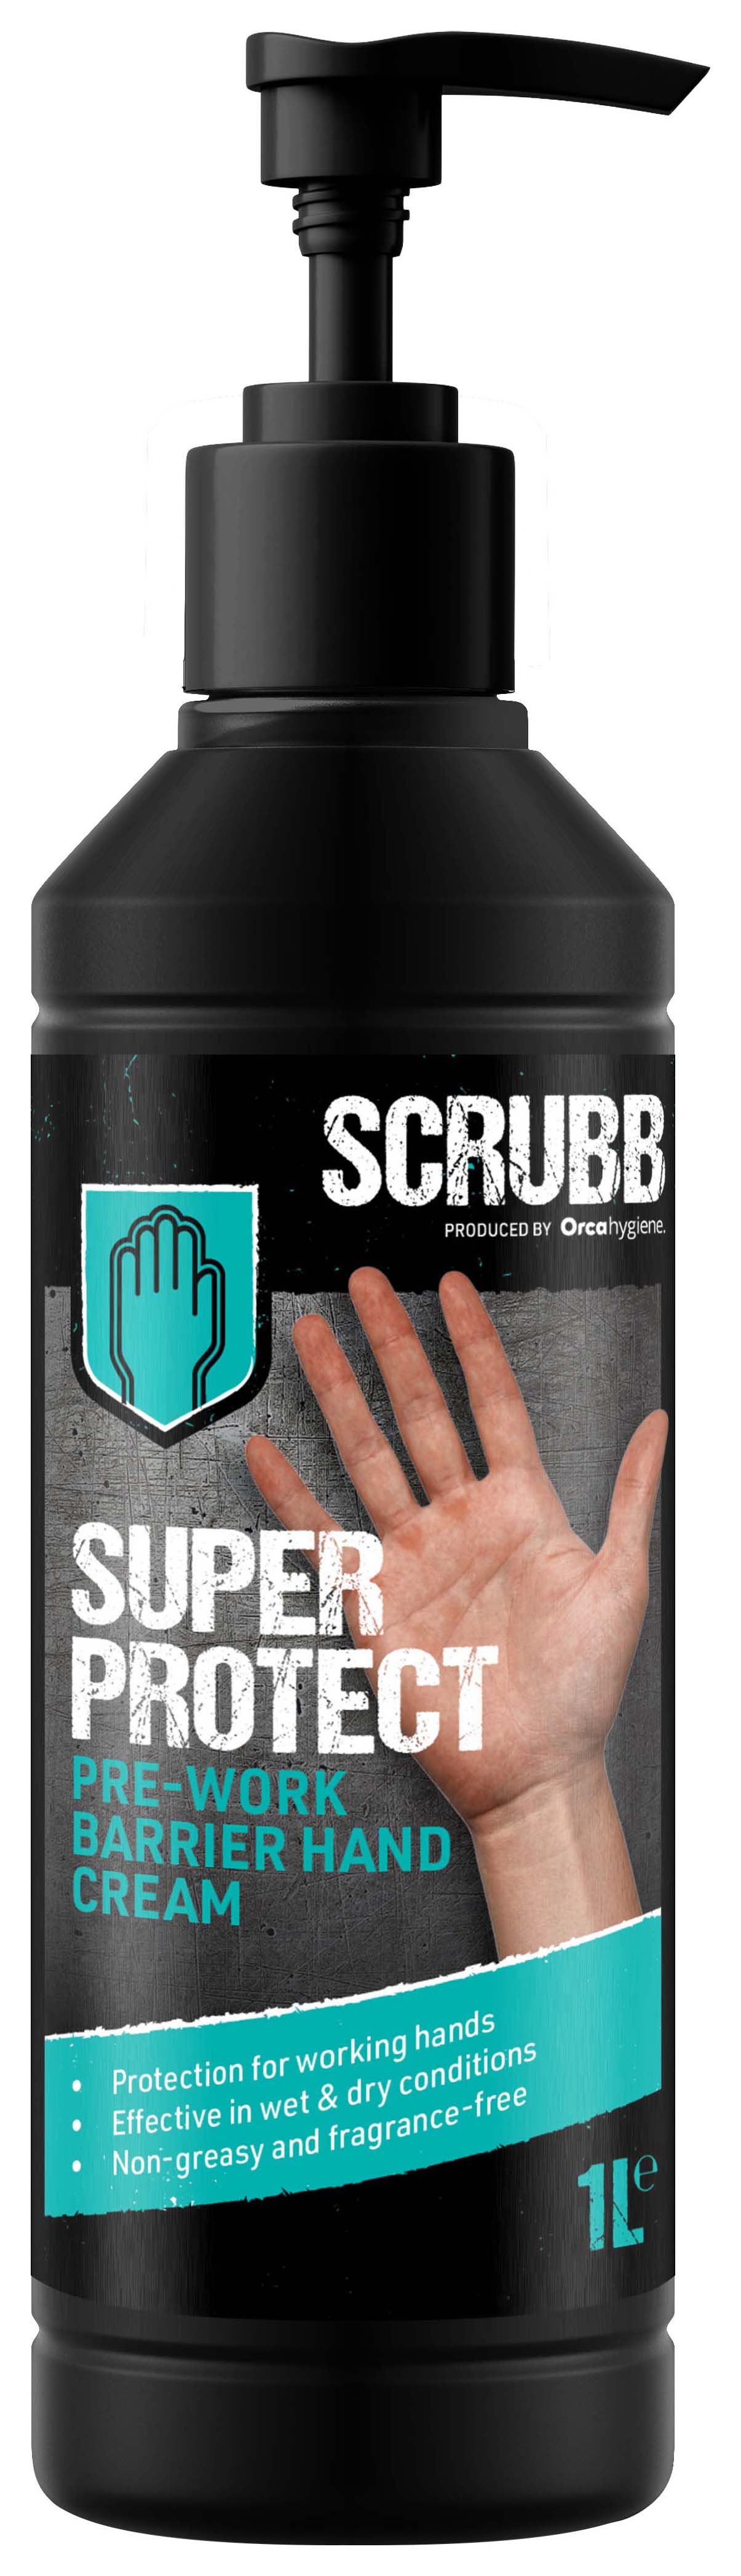 SCRUBB Super Protect Barrier Cream - 1L